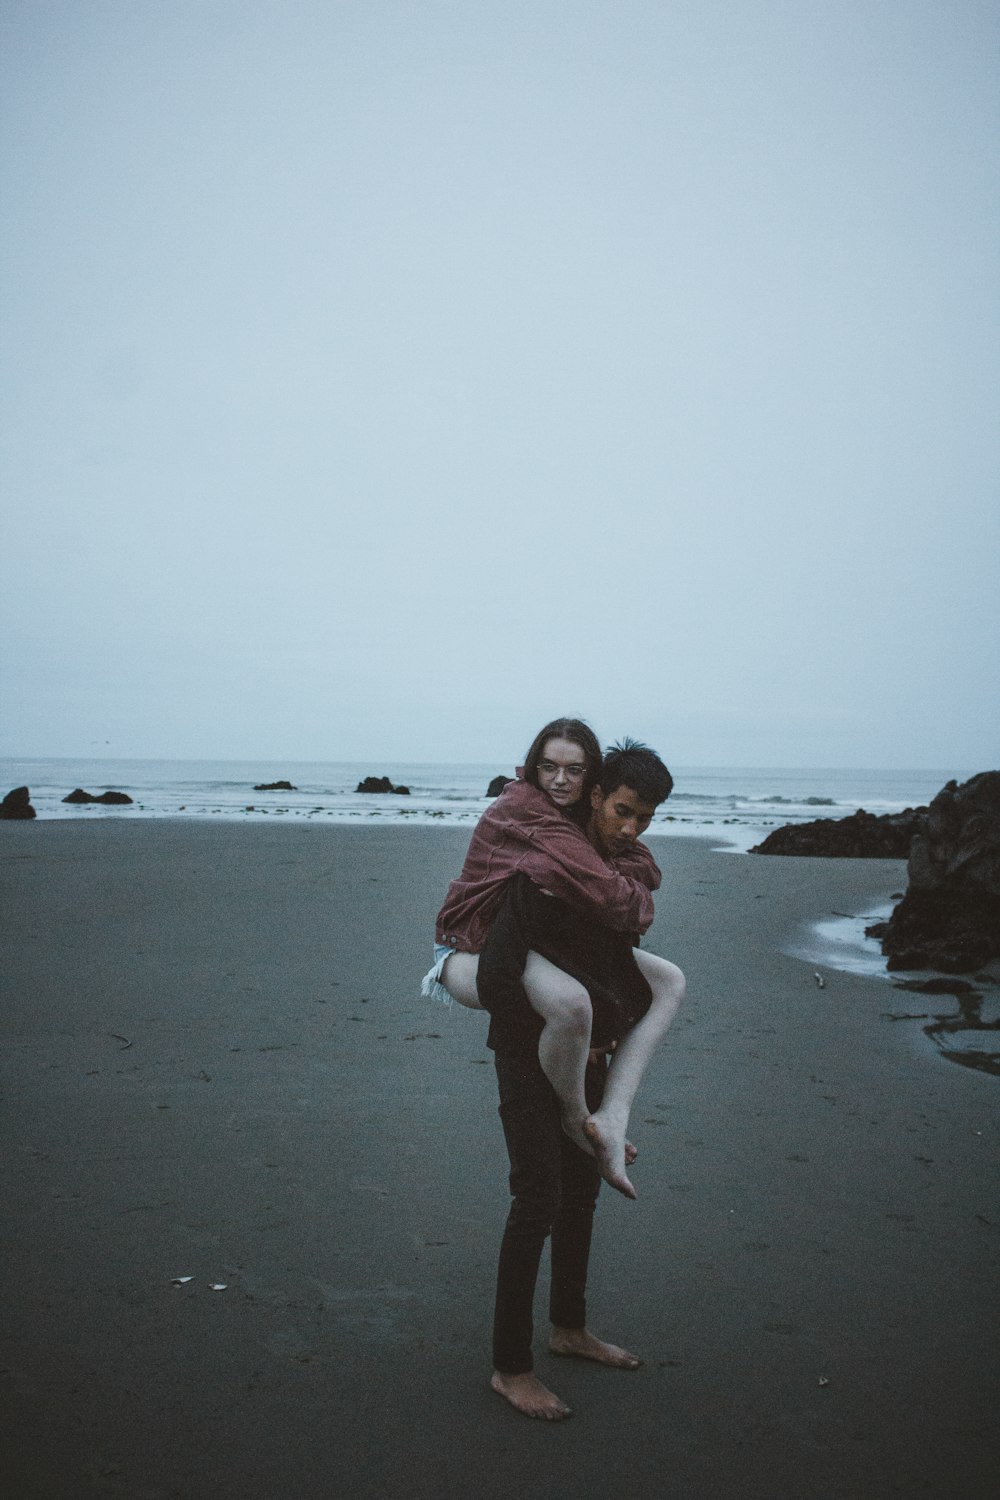 Fotografia cândida do homem carregando a mulher nas costas perto da costa